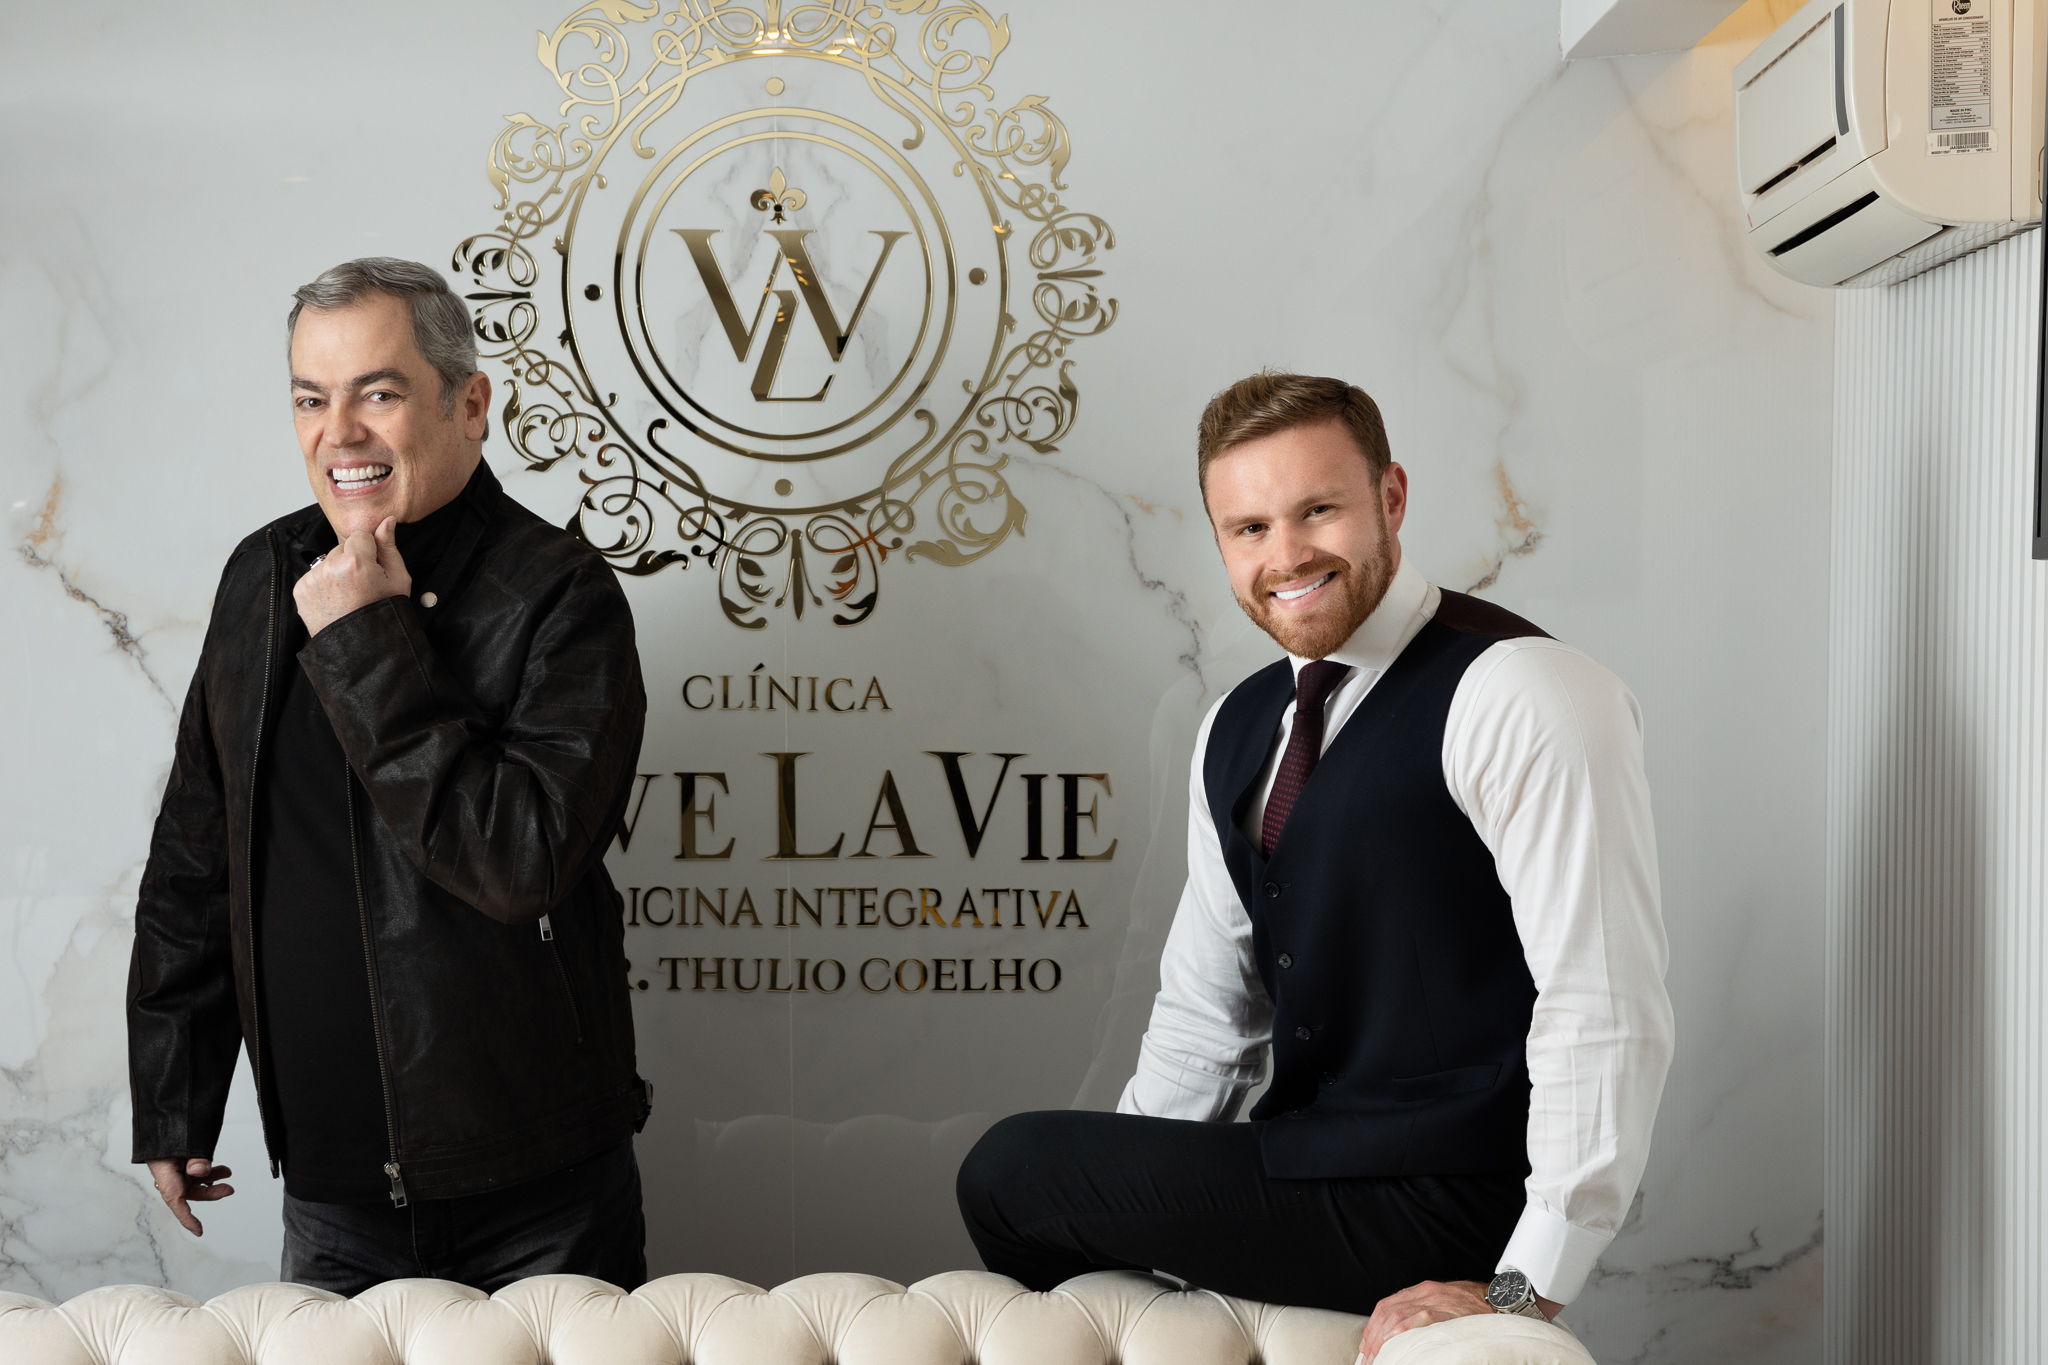 Marco Biaggi e Thulio Coelho posam lado a lado, ambos atrás de sofá rosa. Marco está de pé vestindo roupas pretas, Thulio está apoiado e veste camisa branca, gravata e colete preto.